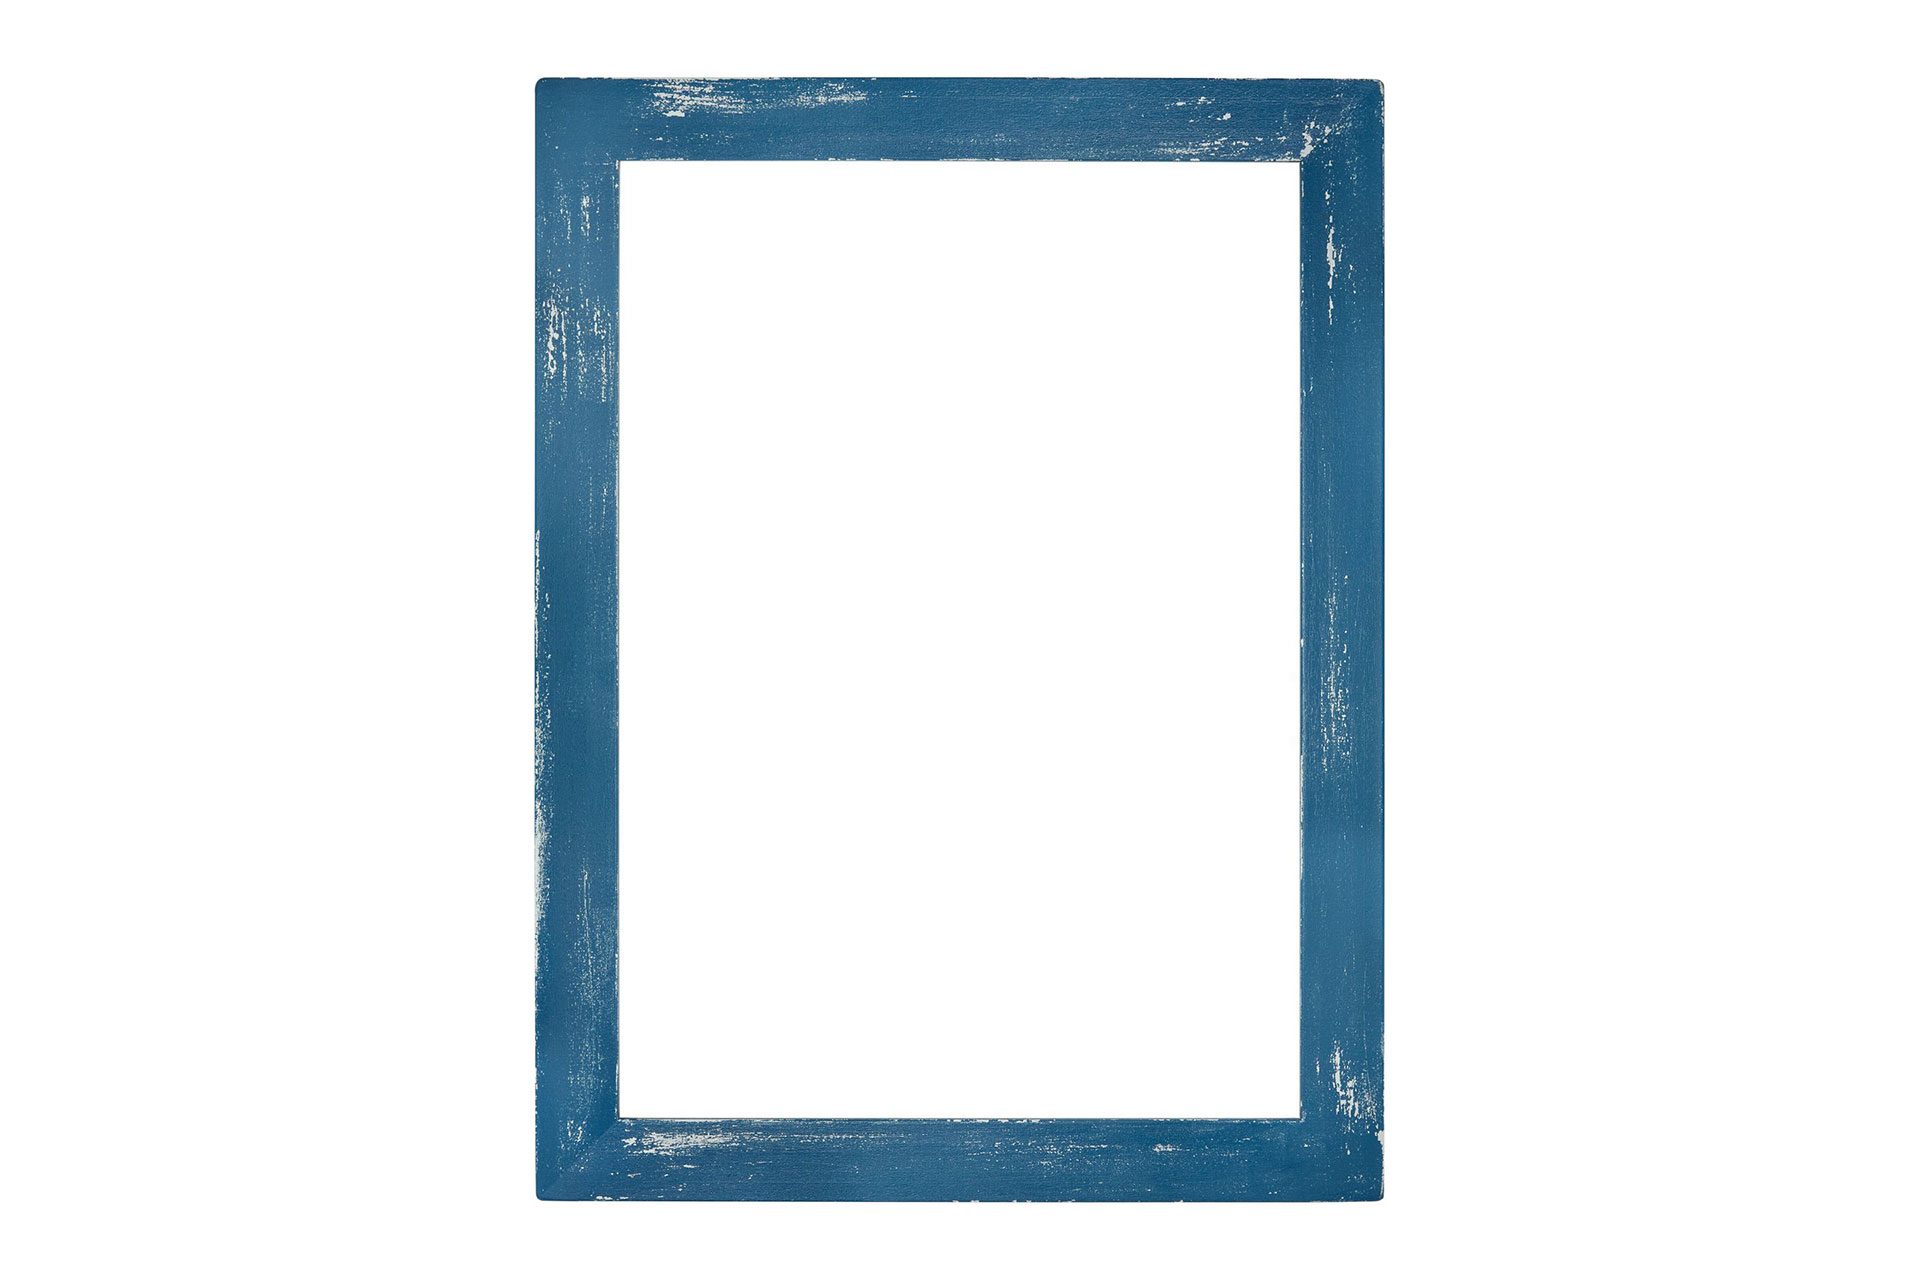 ASR-Rahmendesign Wandspiegel Modell Malta, Azurblau/Lichtgrau, Facettenspiegel, rechteckig, Innenbereich, Shabby-Chic, Ansicht Rahmen